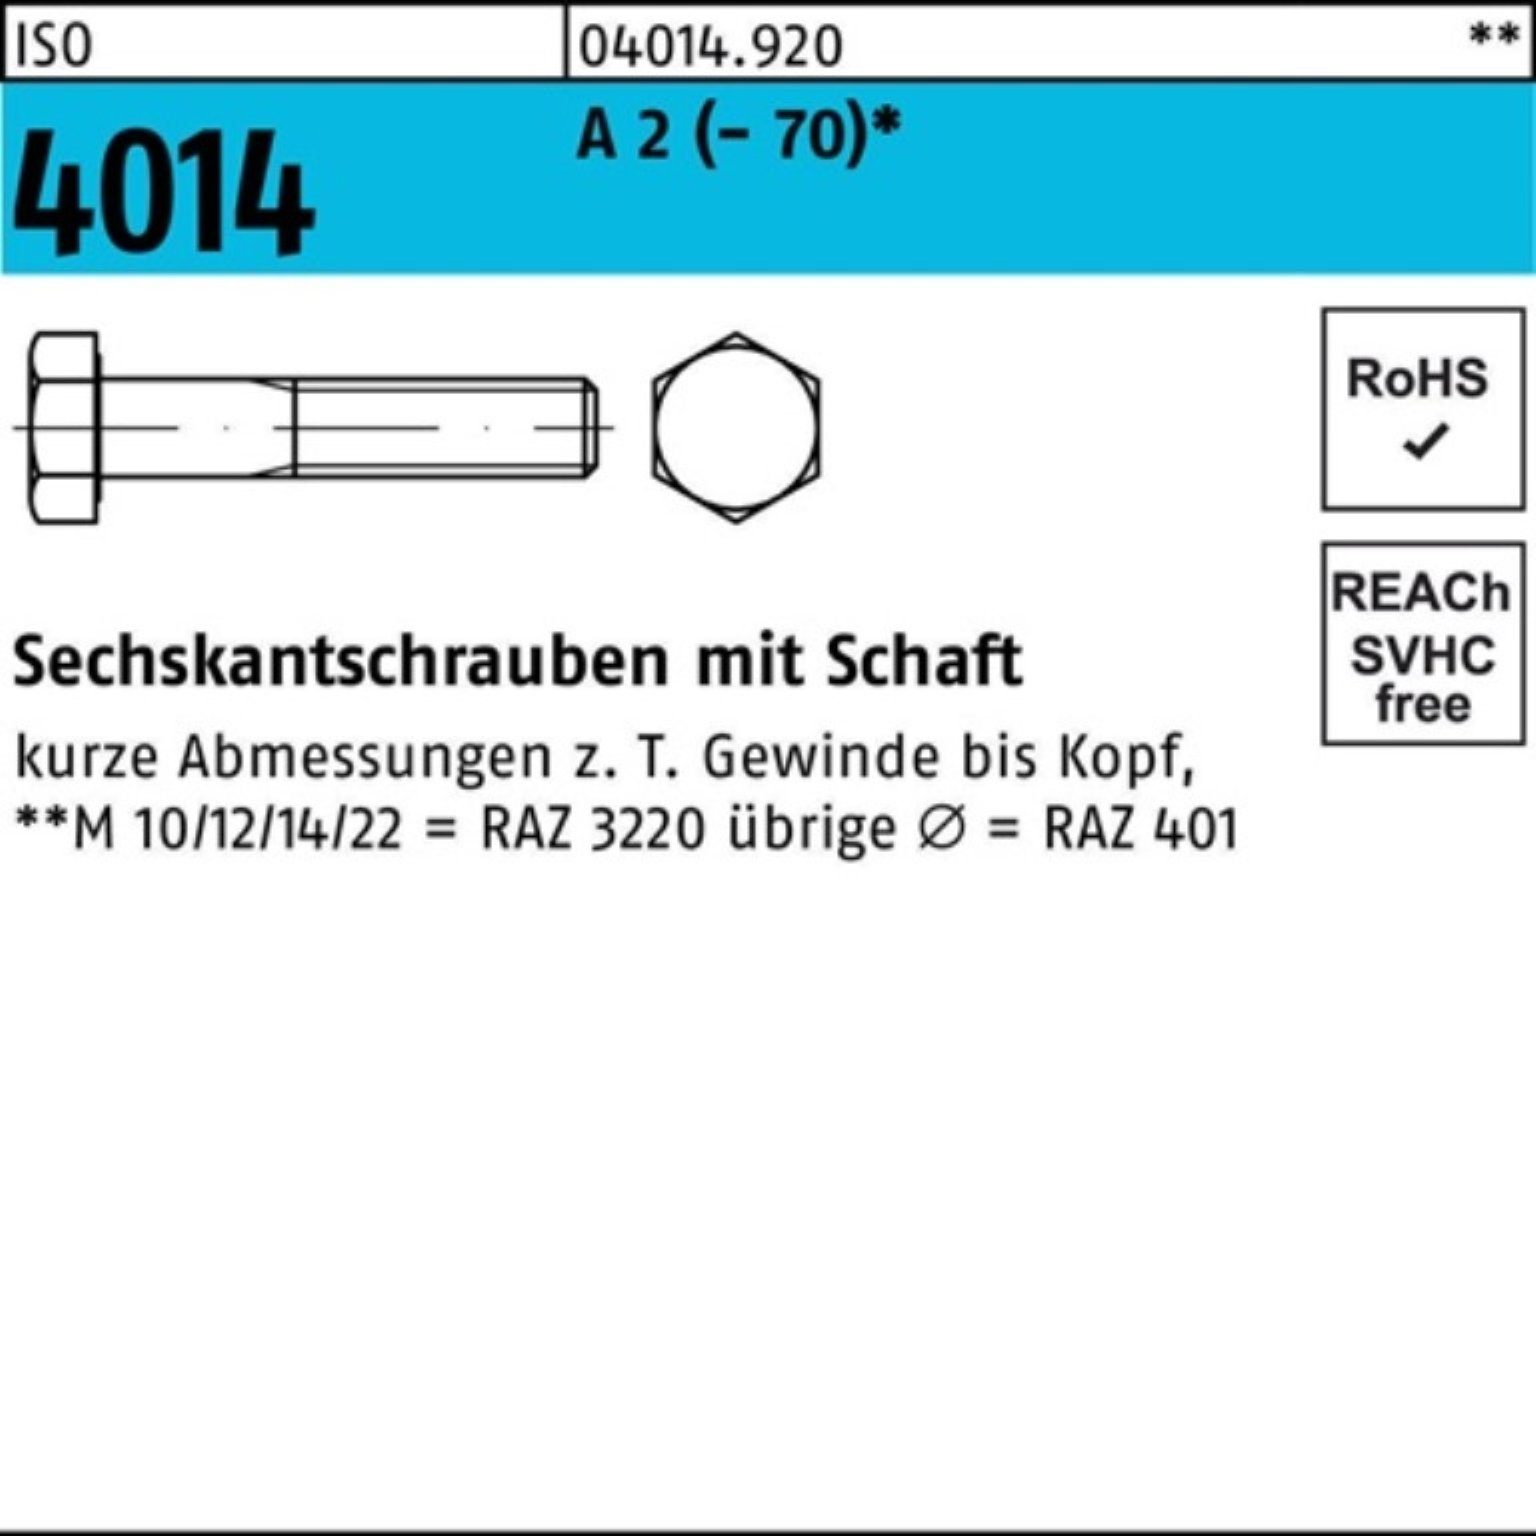 Bufab Sechskantschraube 100er Pack Sechskantschraube ISO 4014 Schaft M24x 110 A 2 (70) 1 St